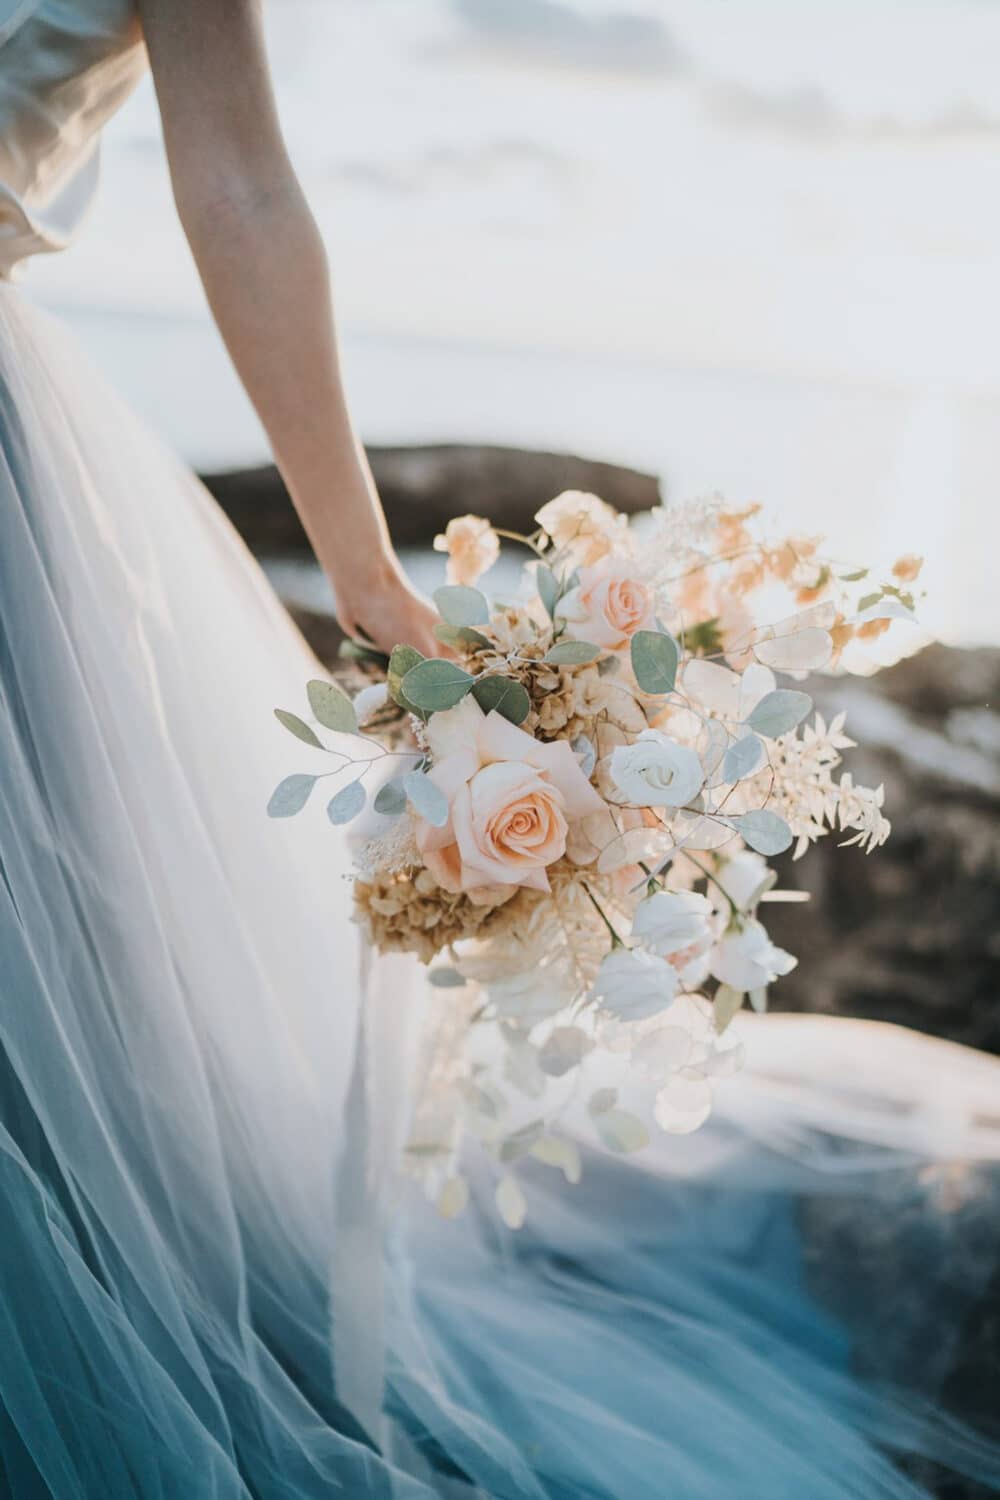 Peach and white bridal bouquet